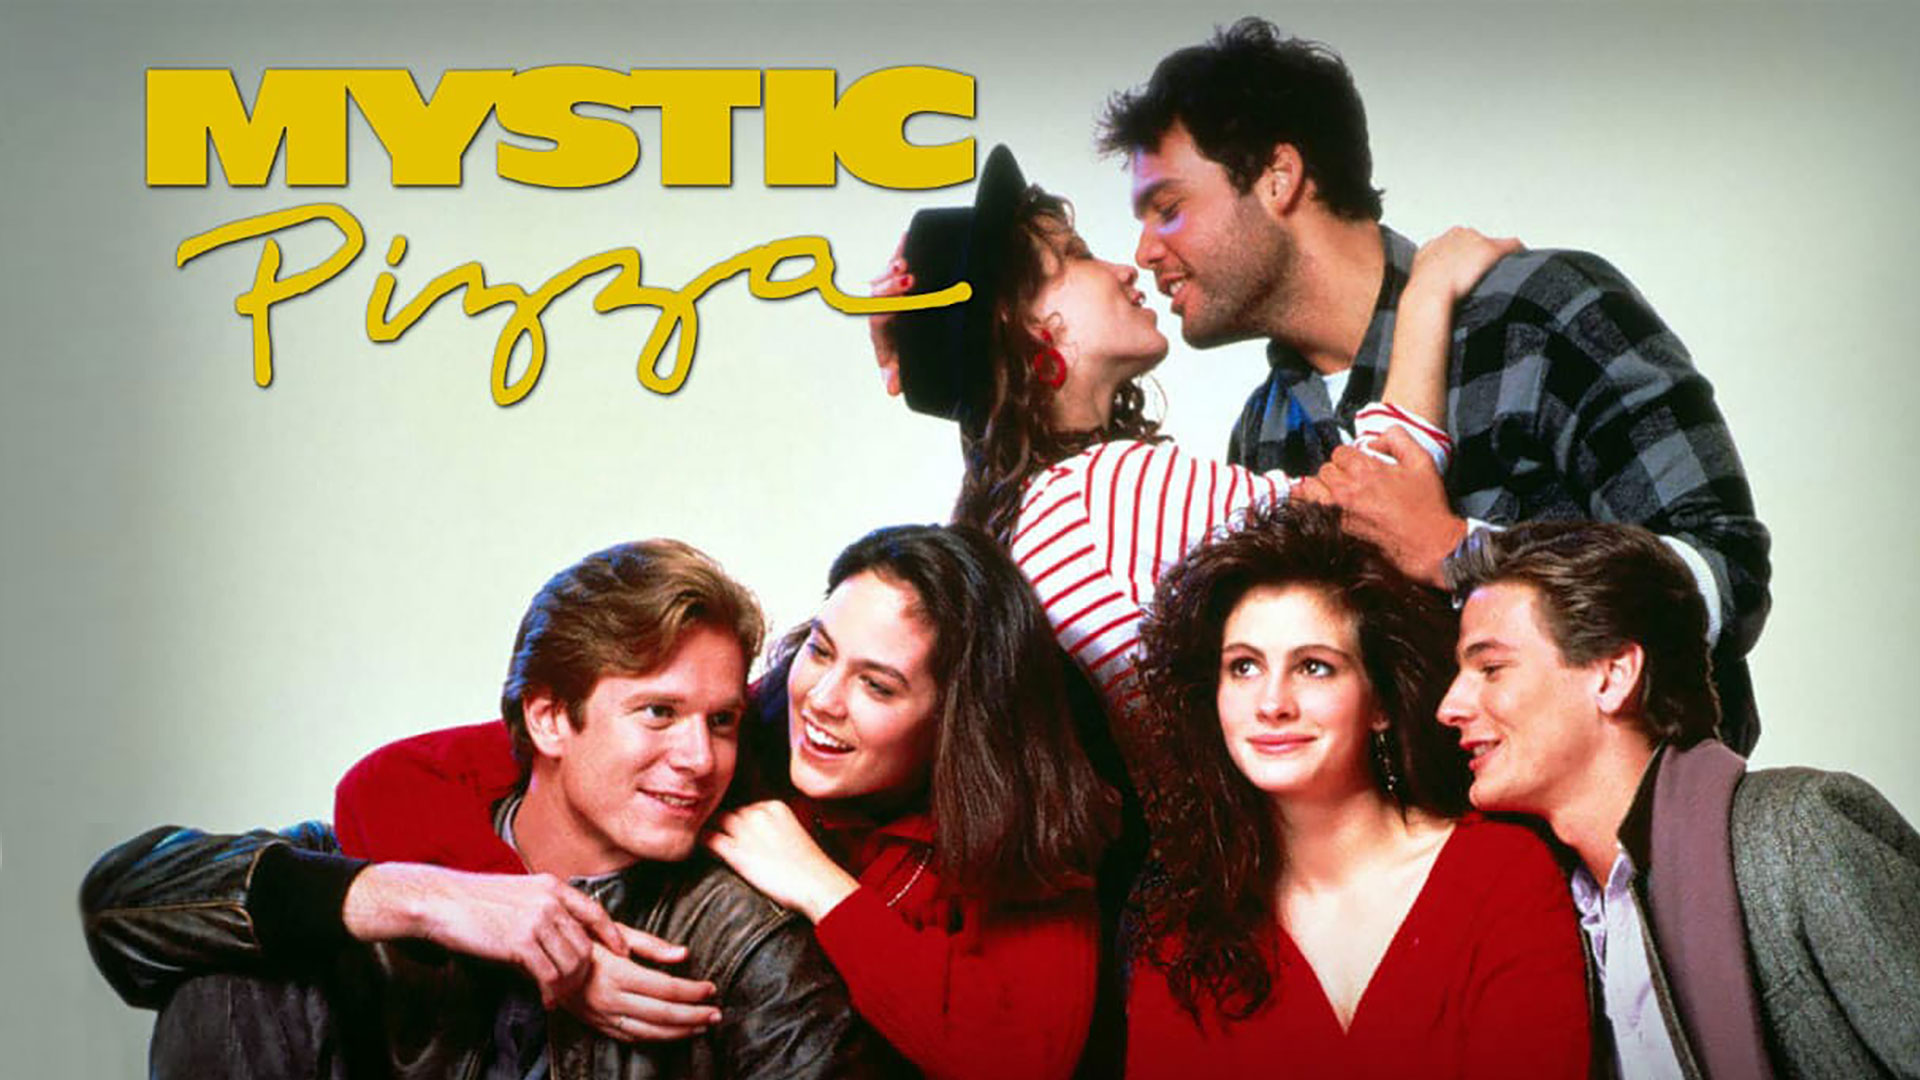 Mystic Pizza (1988) – Comedy, Drama, Romance